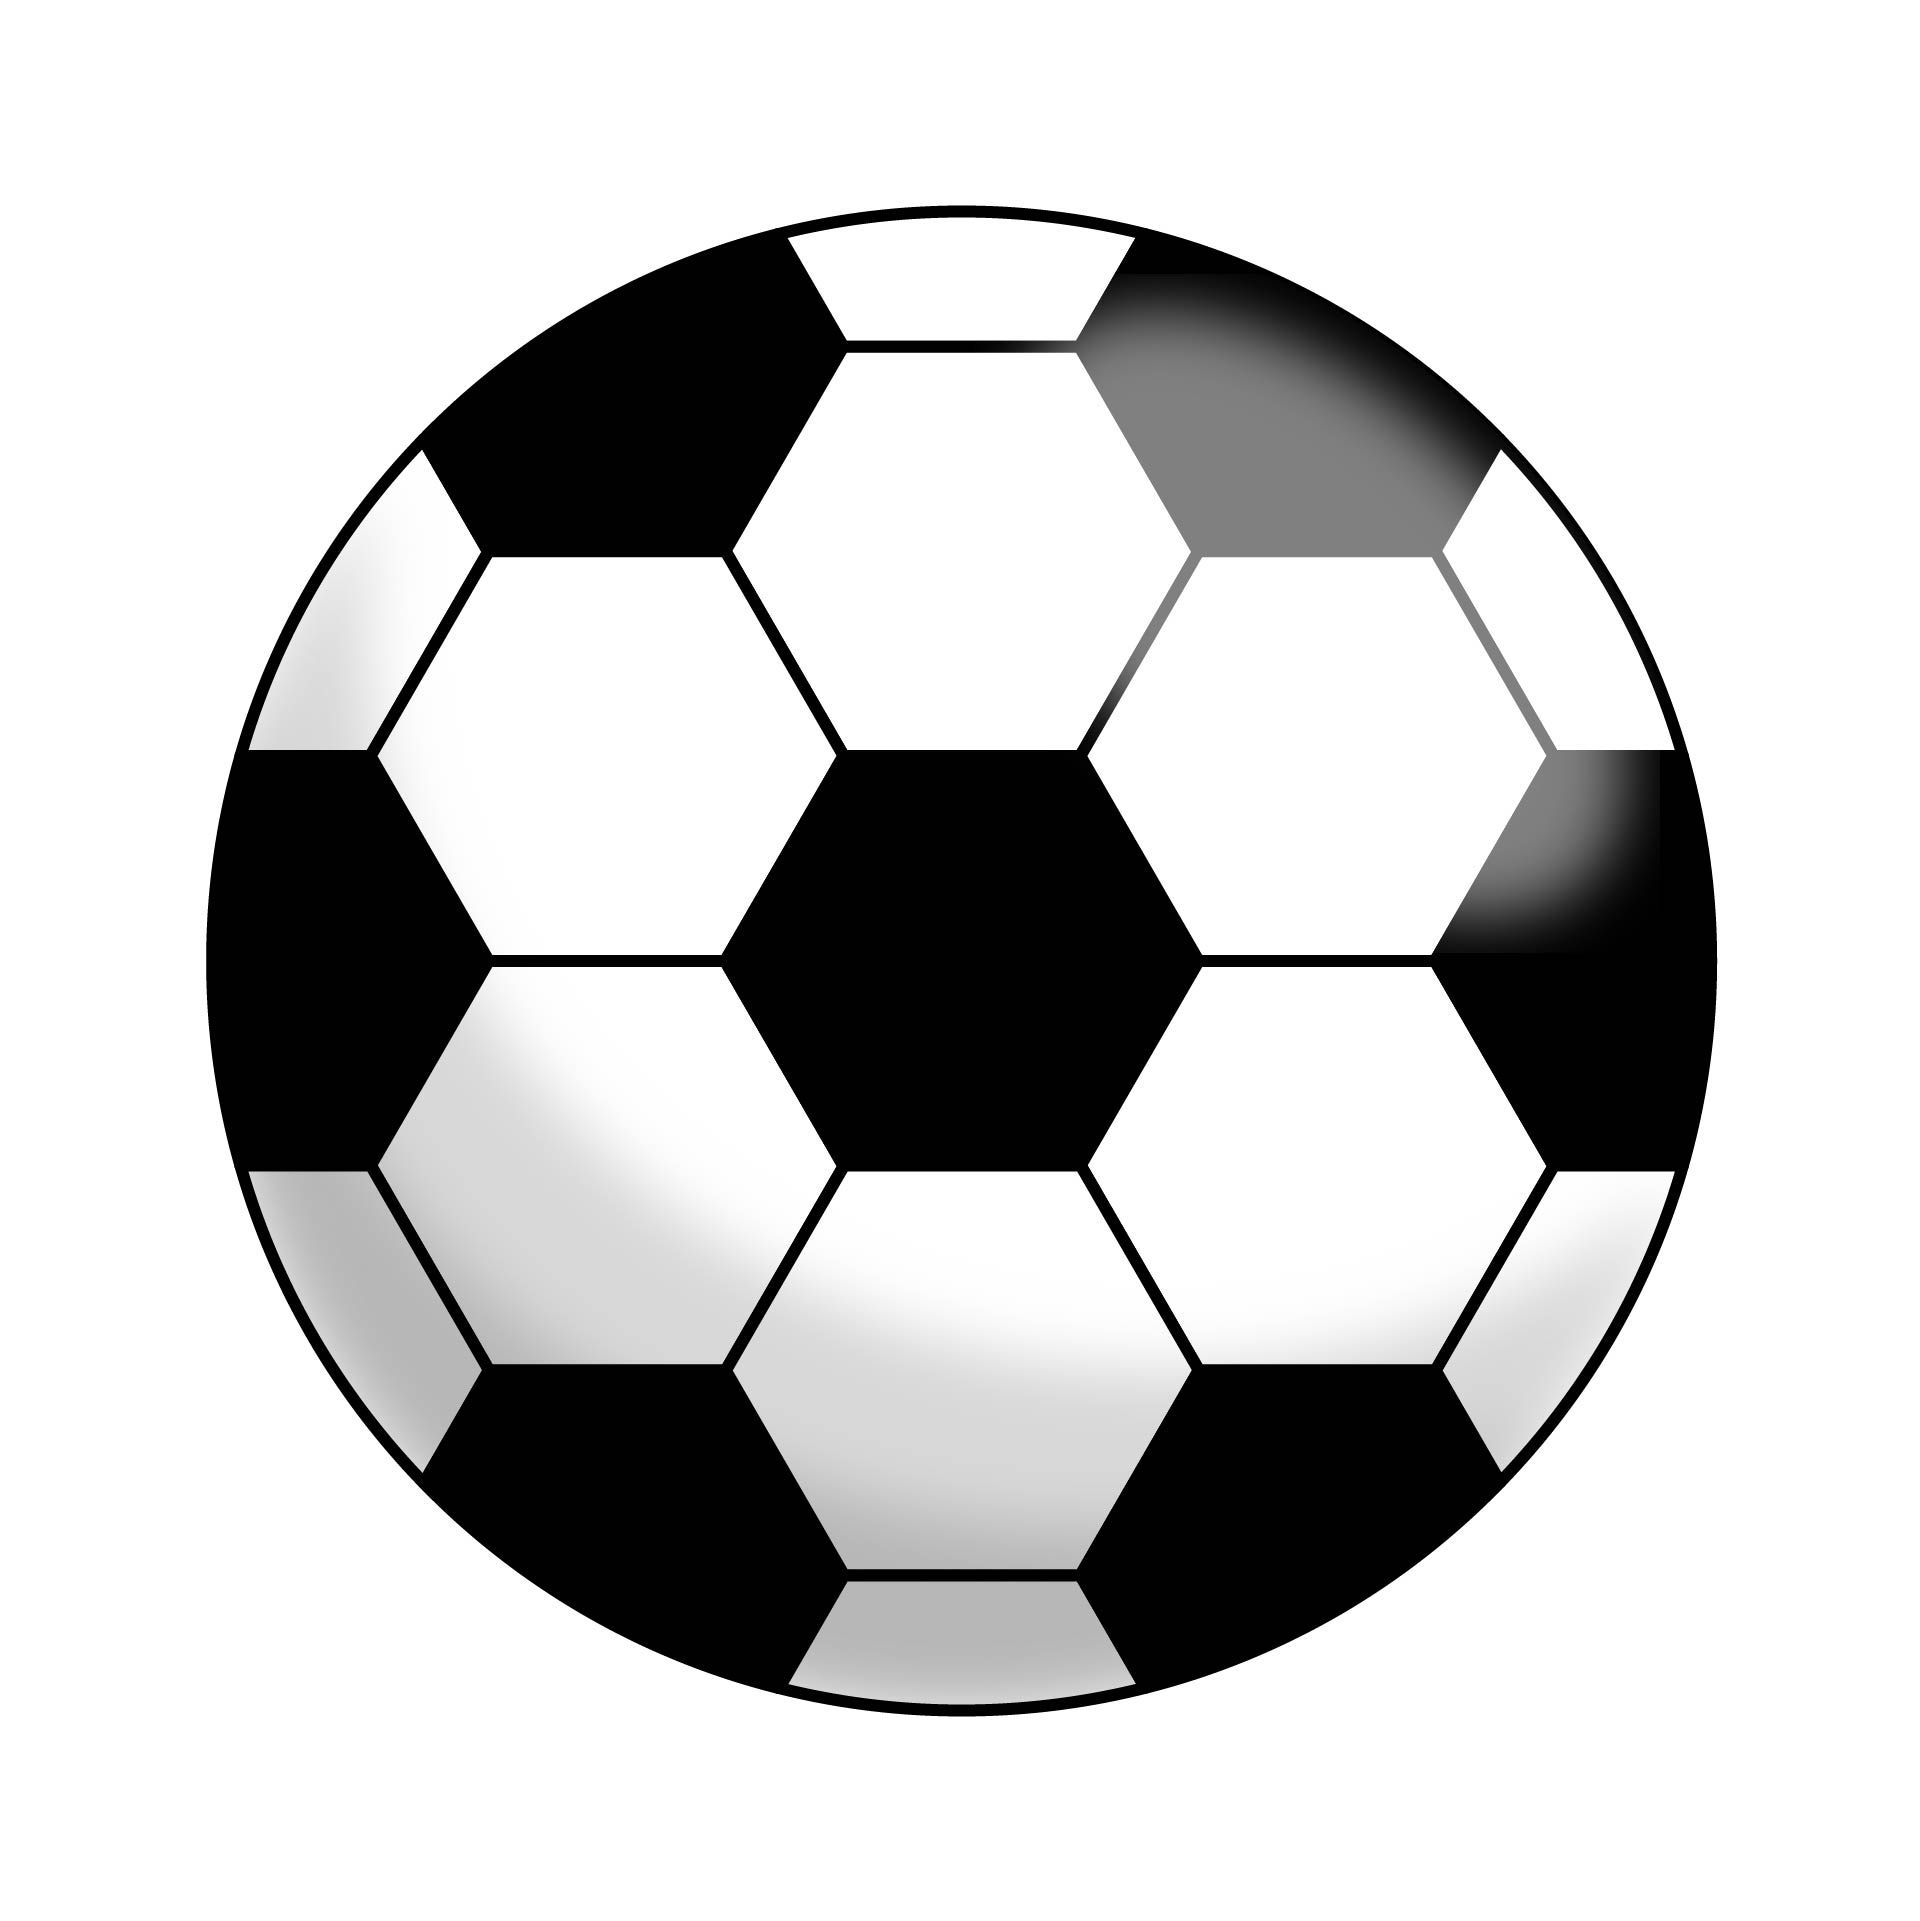 Best printable soccer ball pattern pdf for free at printablee soccer crafts soccer ball cake soccer ball